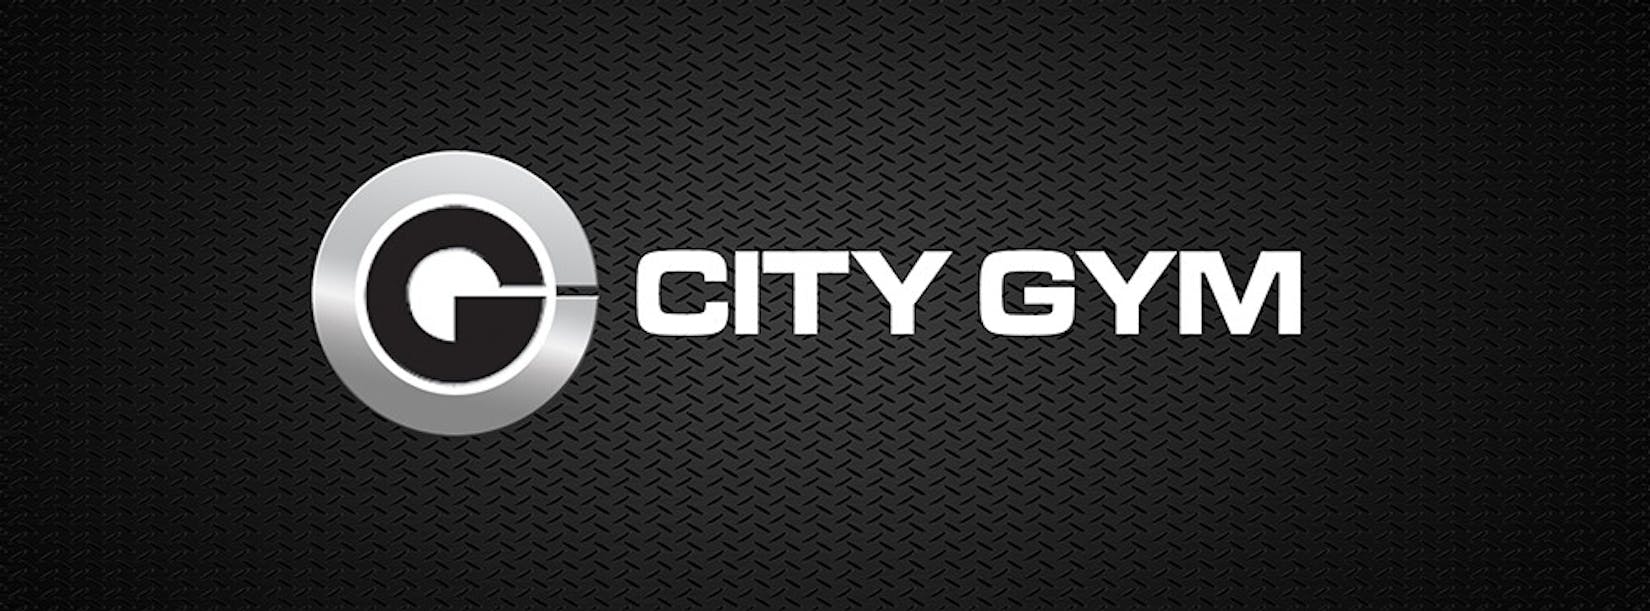 City Gym | Beauty